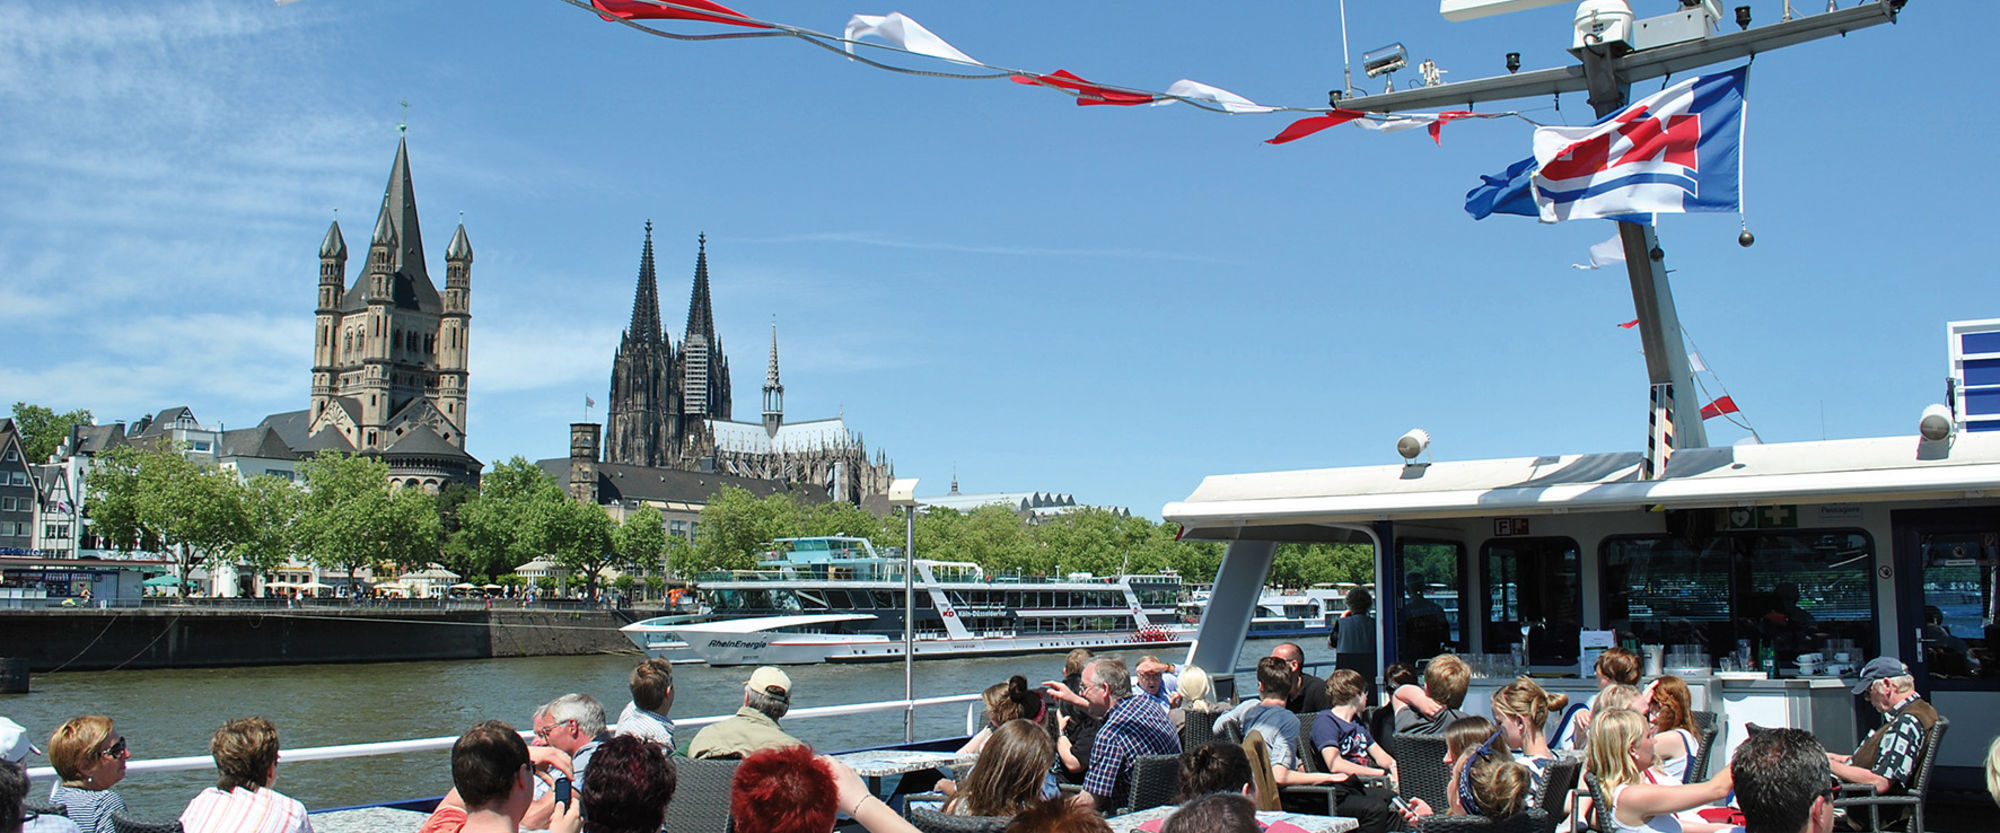 Flussschiff auf Rhein mit Kölner Dom im Hintergrund